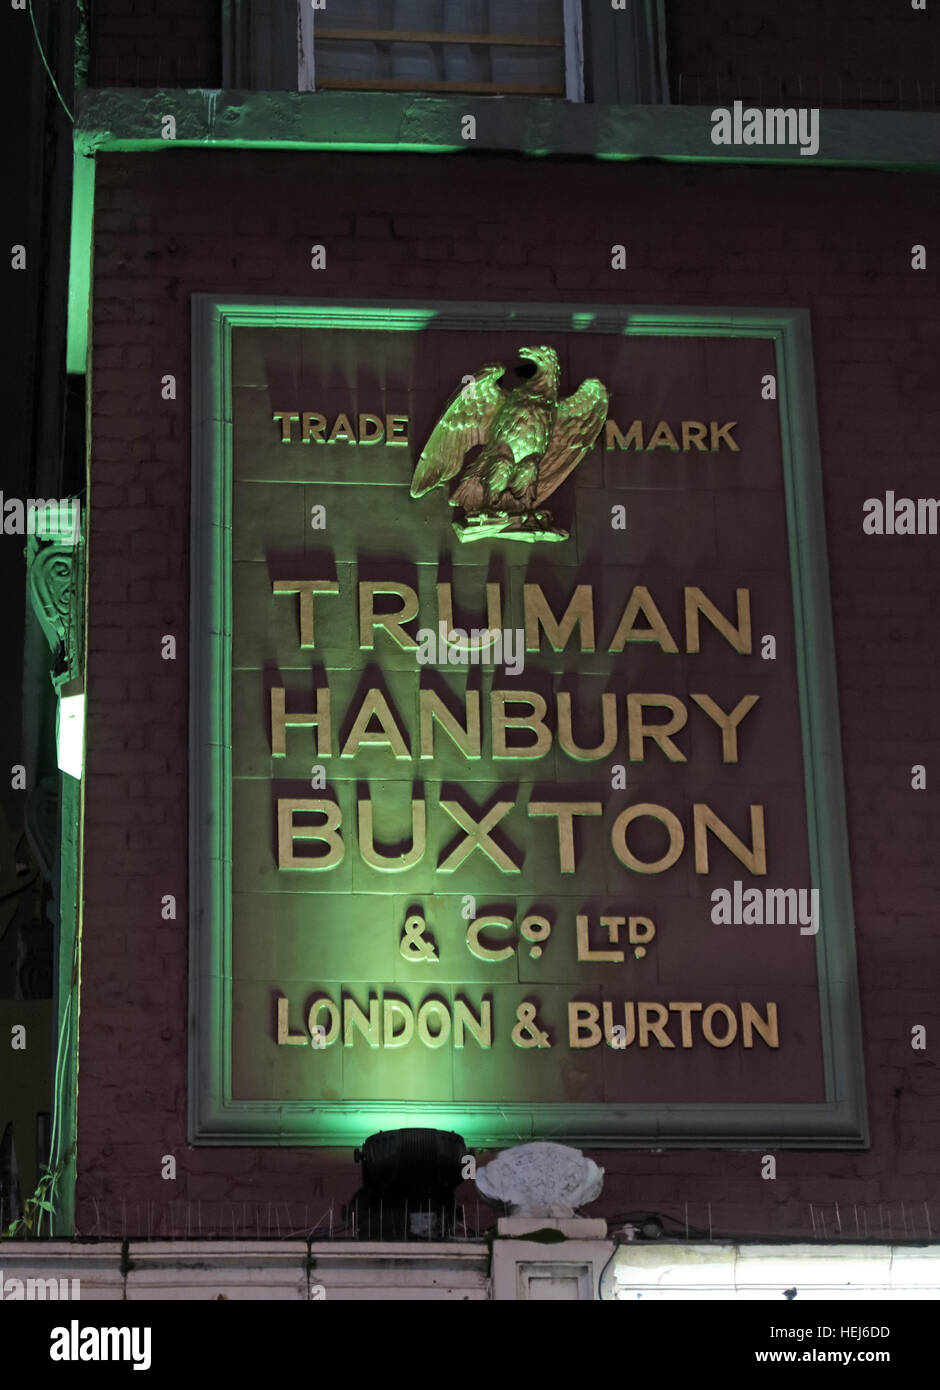 Nuit à Camden Town, au nord de Londres, Angleterre, Royaume-Uni - Truman signe Buxton Hanbury Burton Ales Banque D'Images